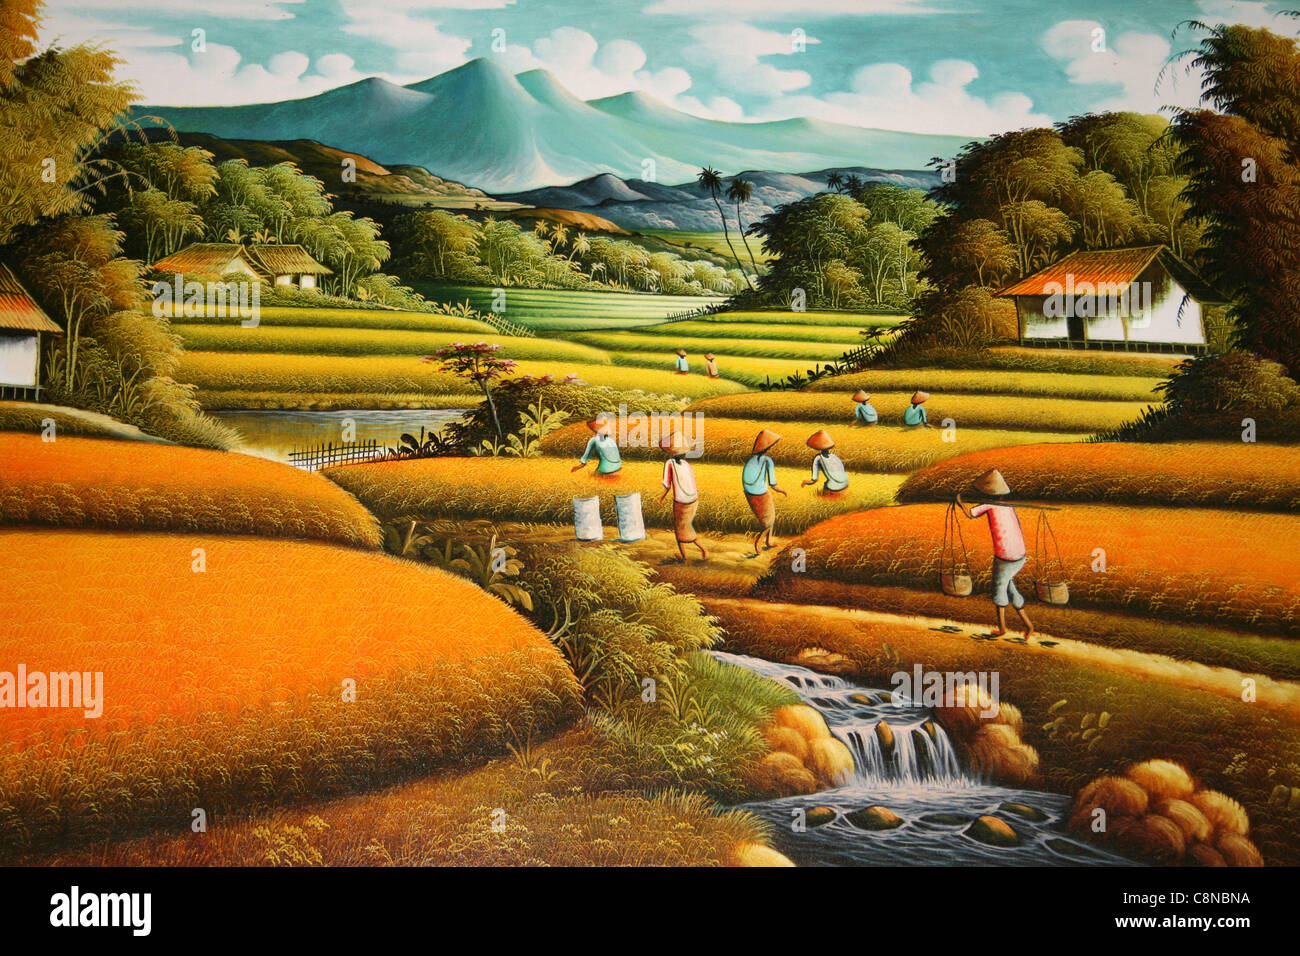 La peinture traditionnelle indonésienne de rizières sur fond d'un volcan Banque D'Images